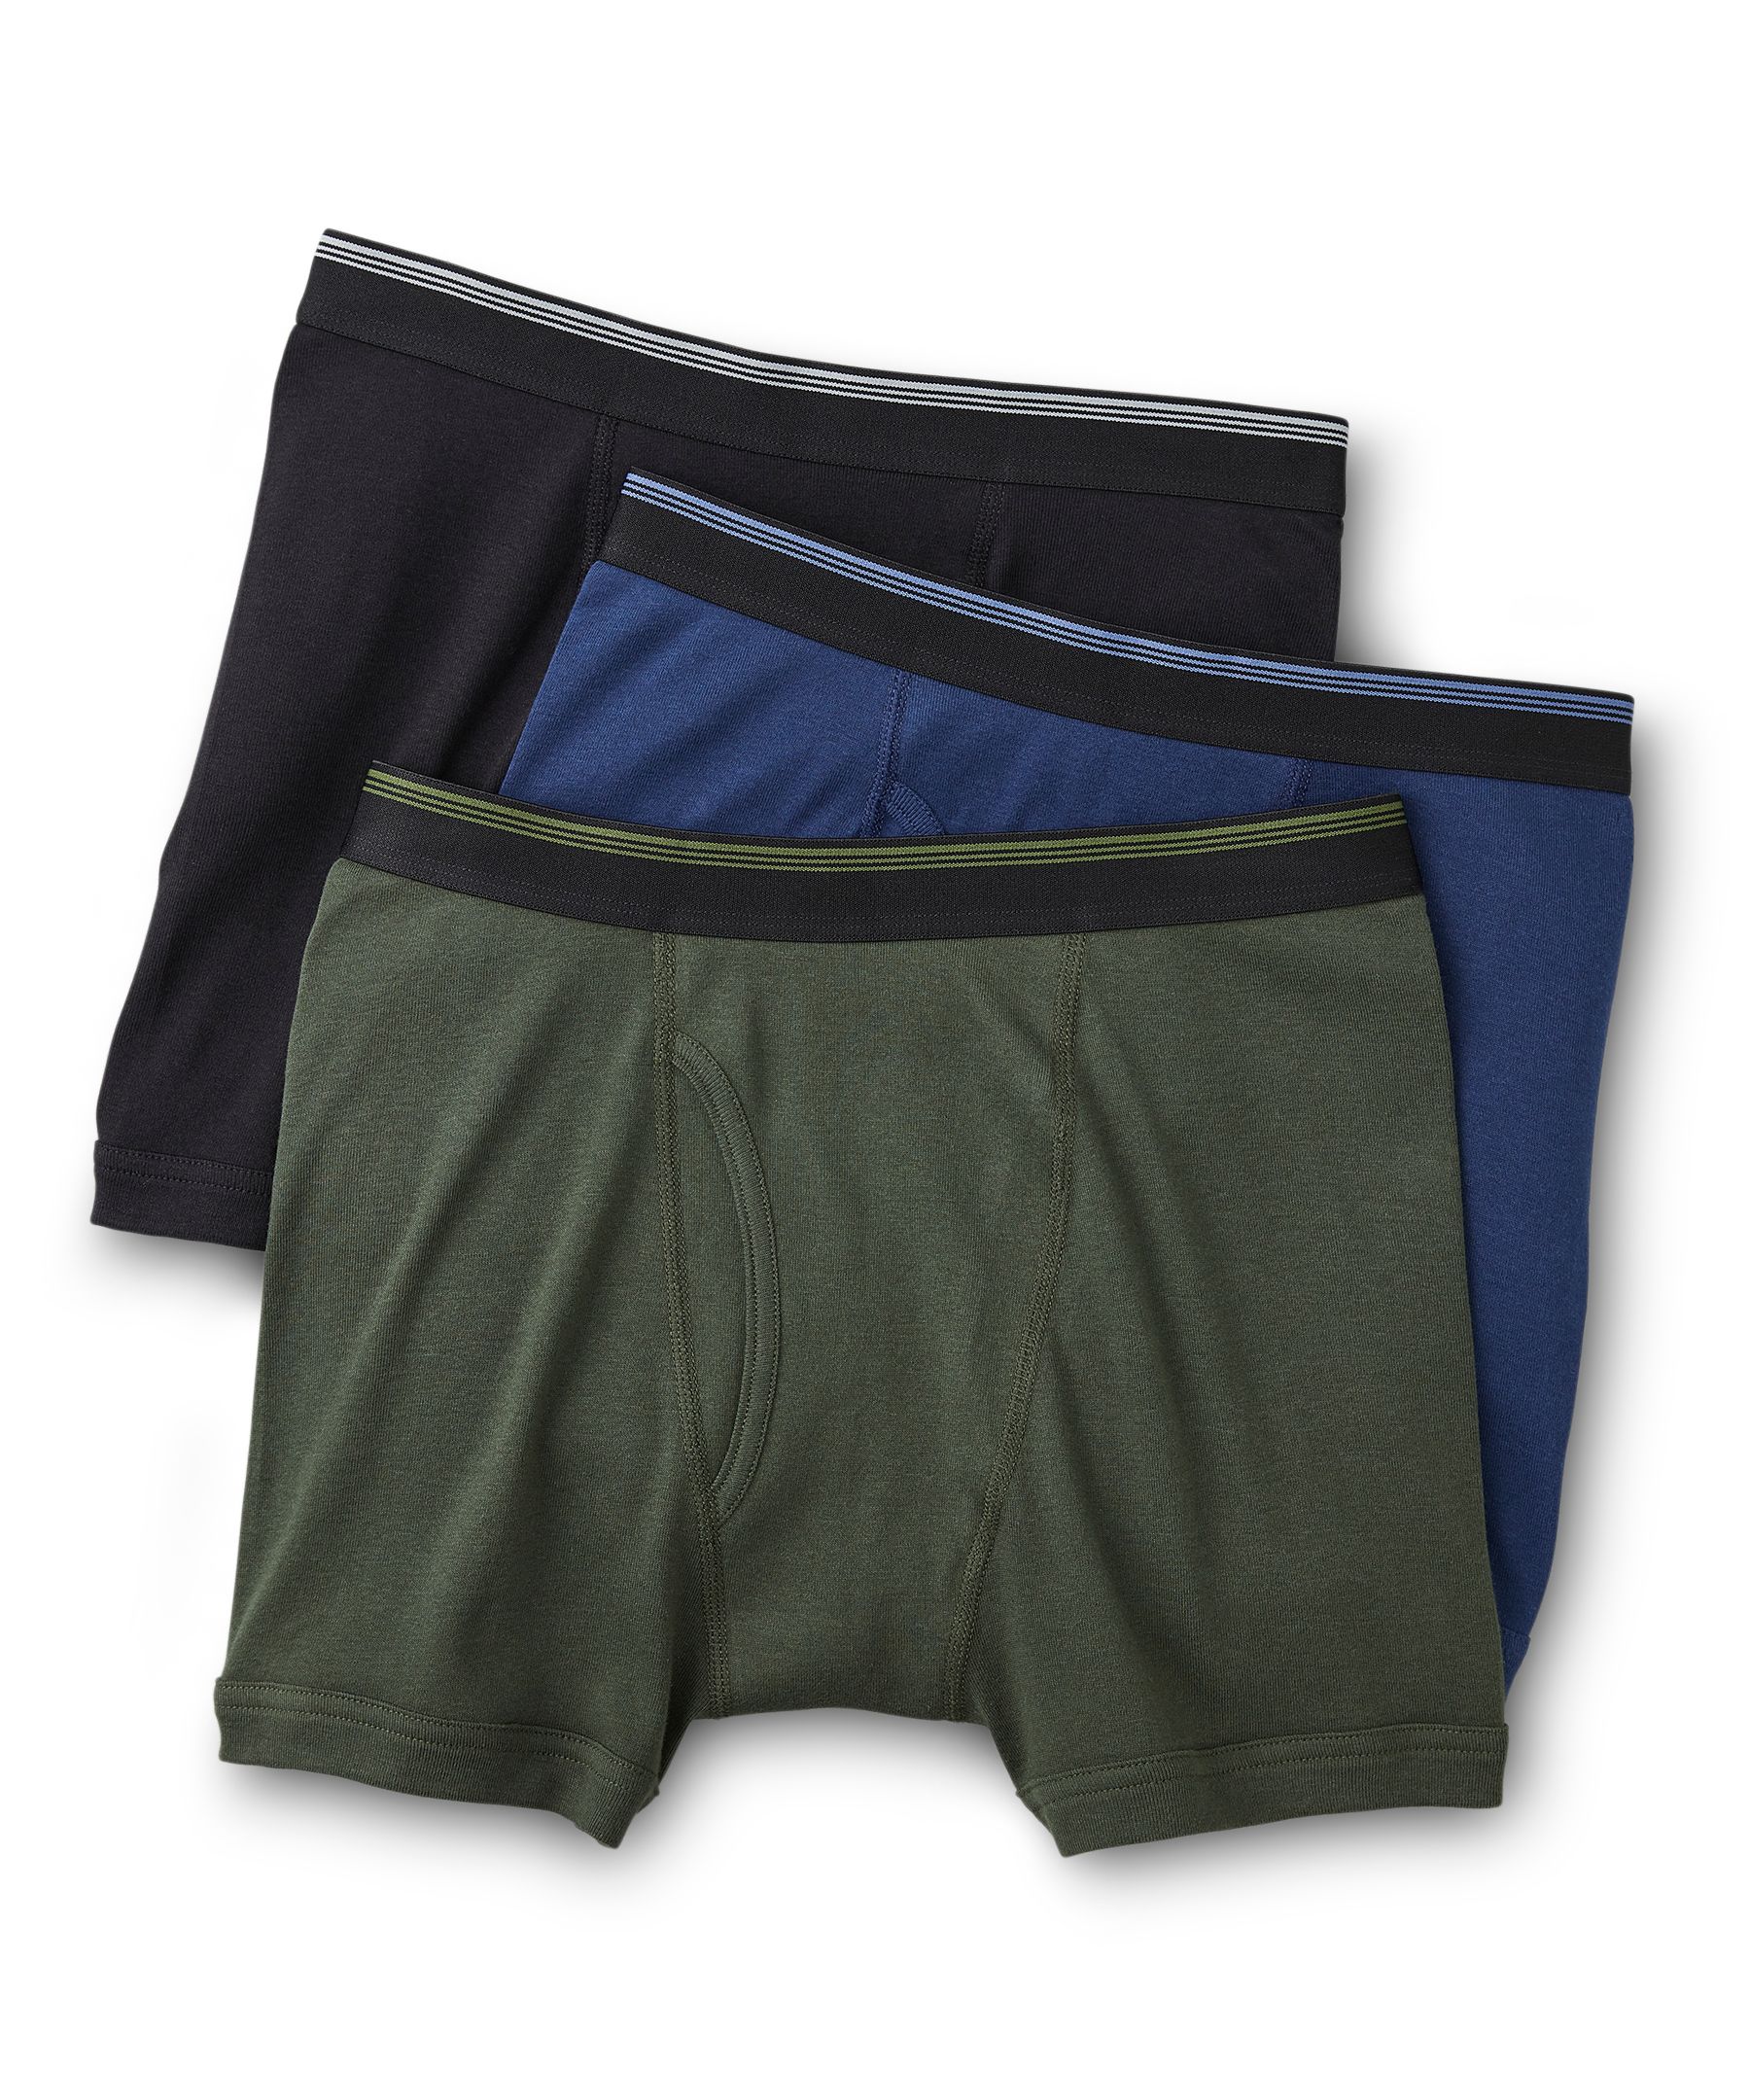 Denver Hayes Men's 3 Pack Solid Basic Briefs Underwear